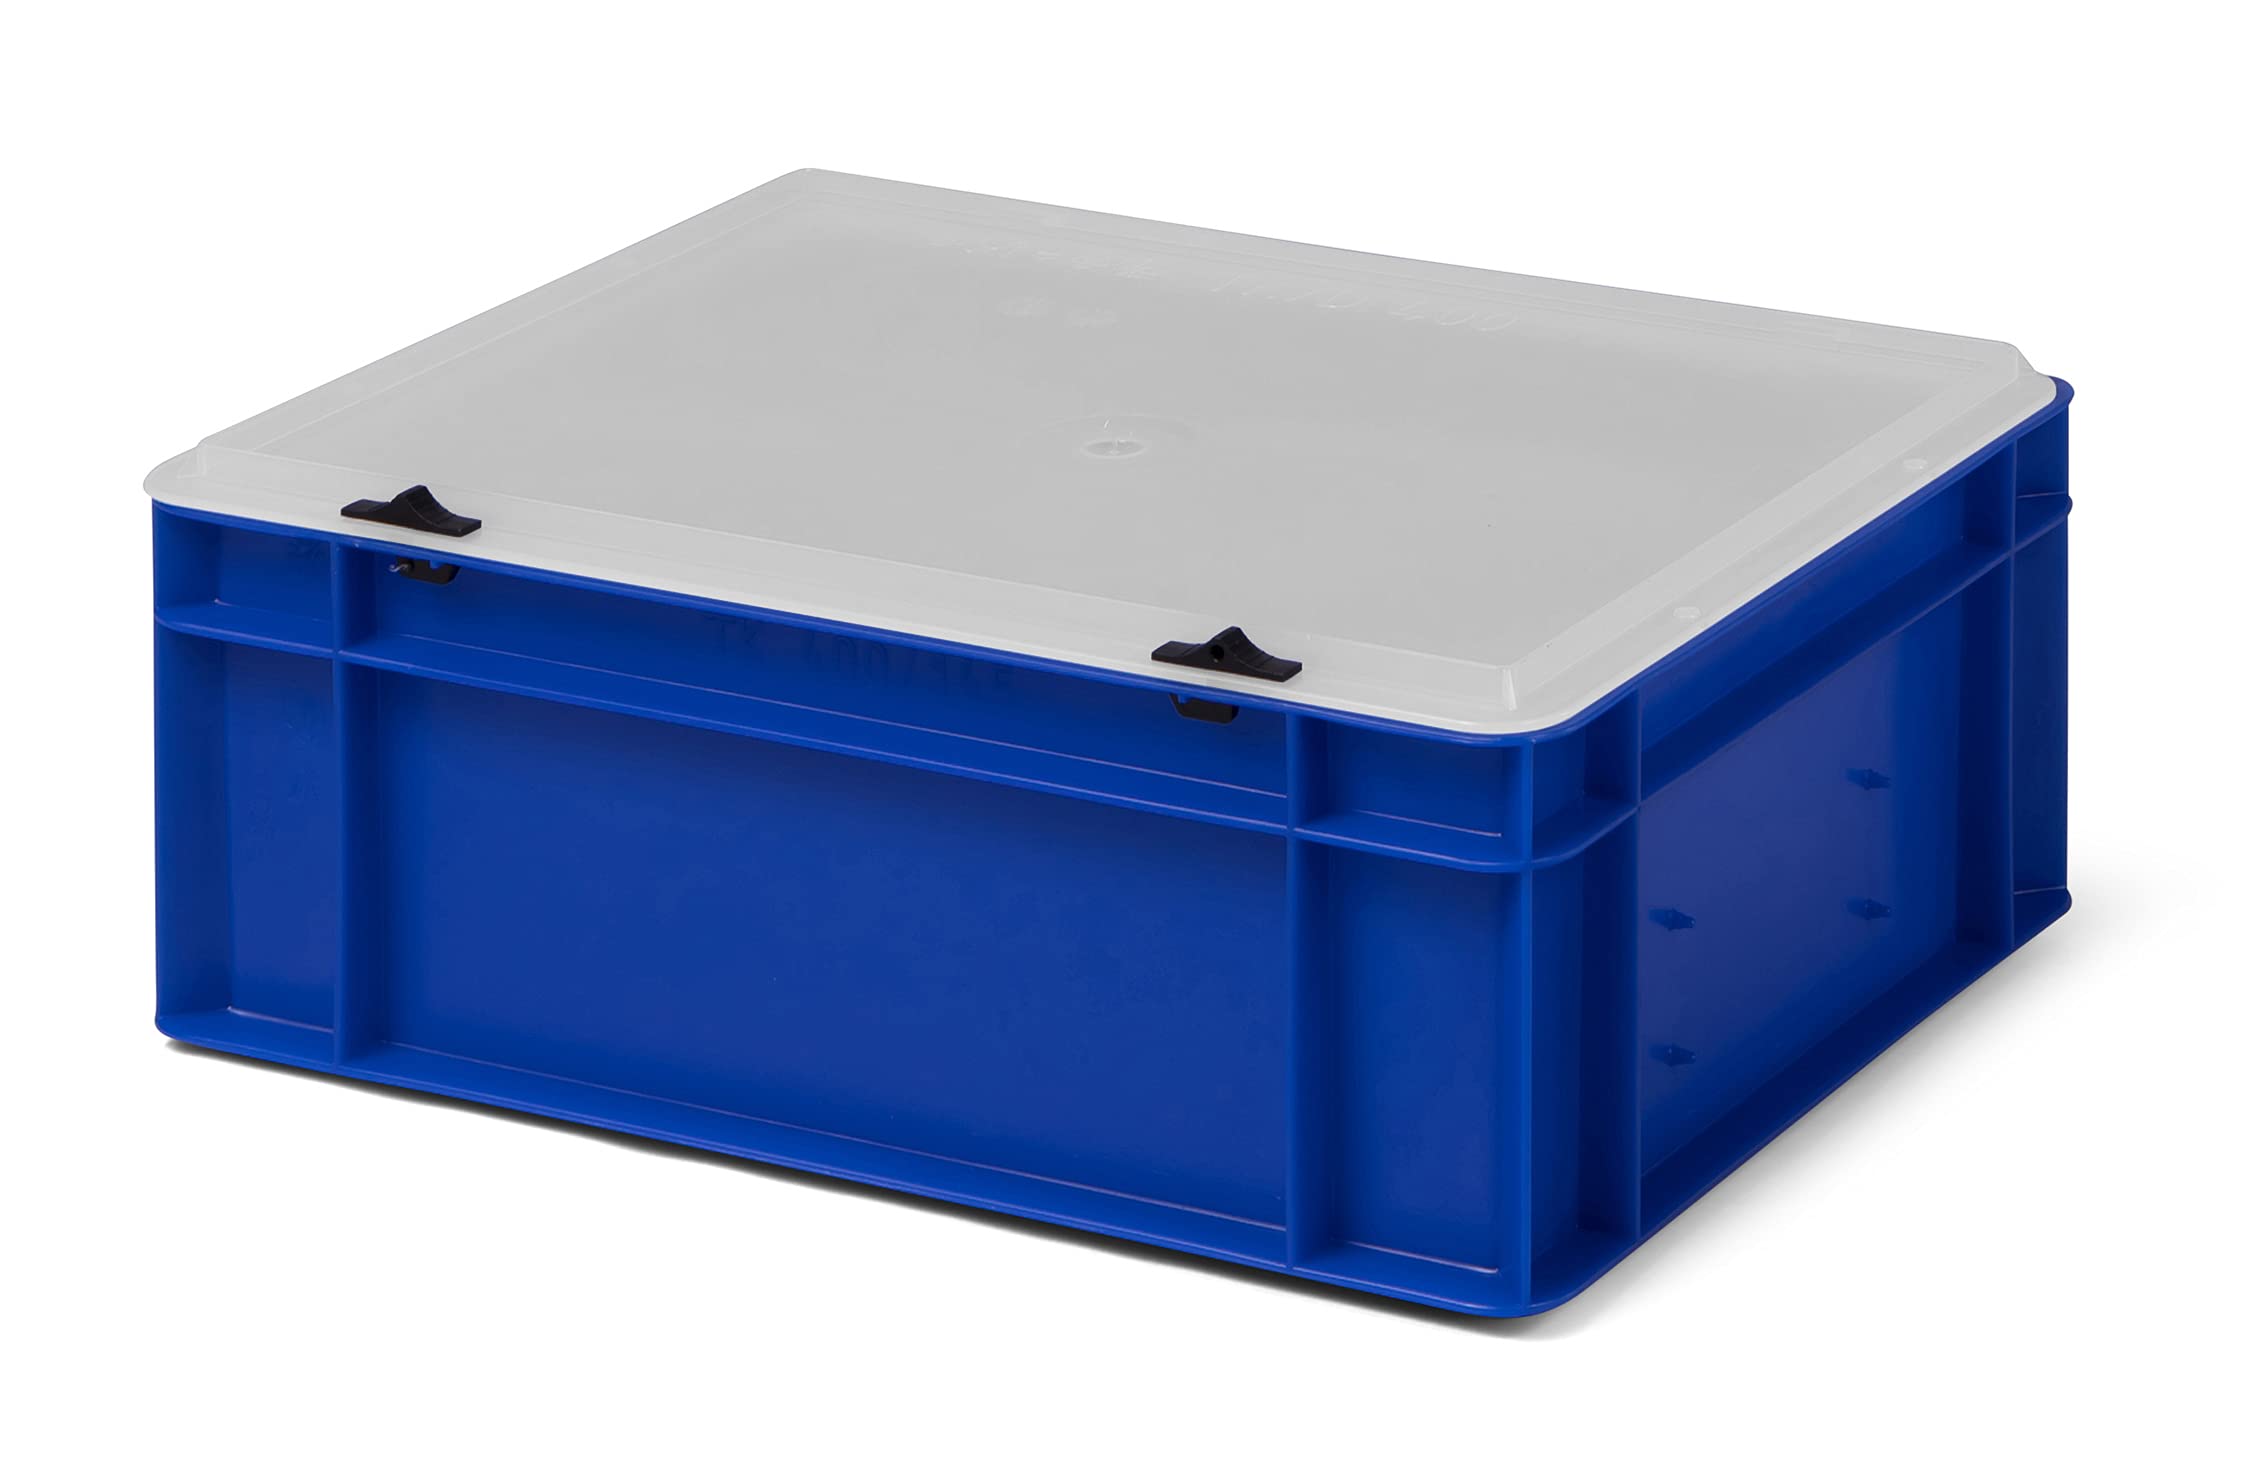 1a-TopStore Design Eurobox Stapelbox Lagerbehälter Kunststoffbox in 5 Farben und 16 Größen mit transparentem Deckel (matt) (blau, 40x30x15 cm)